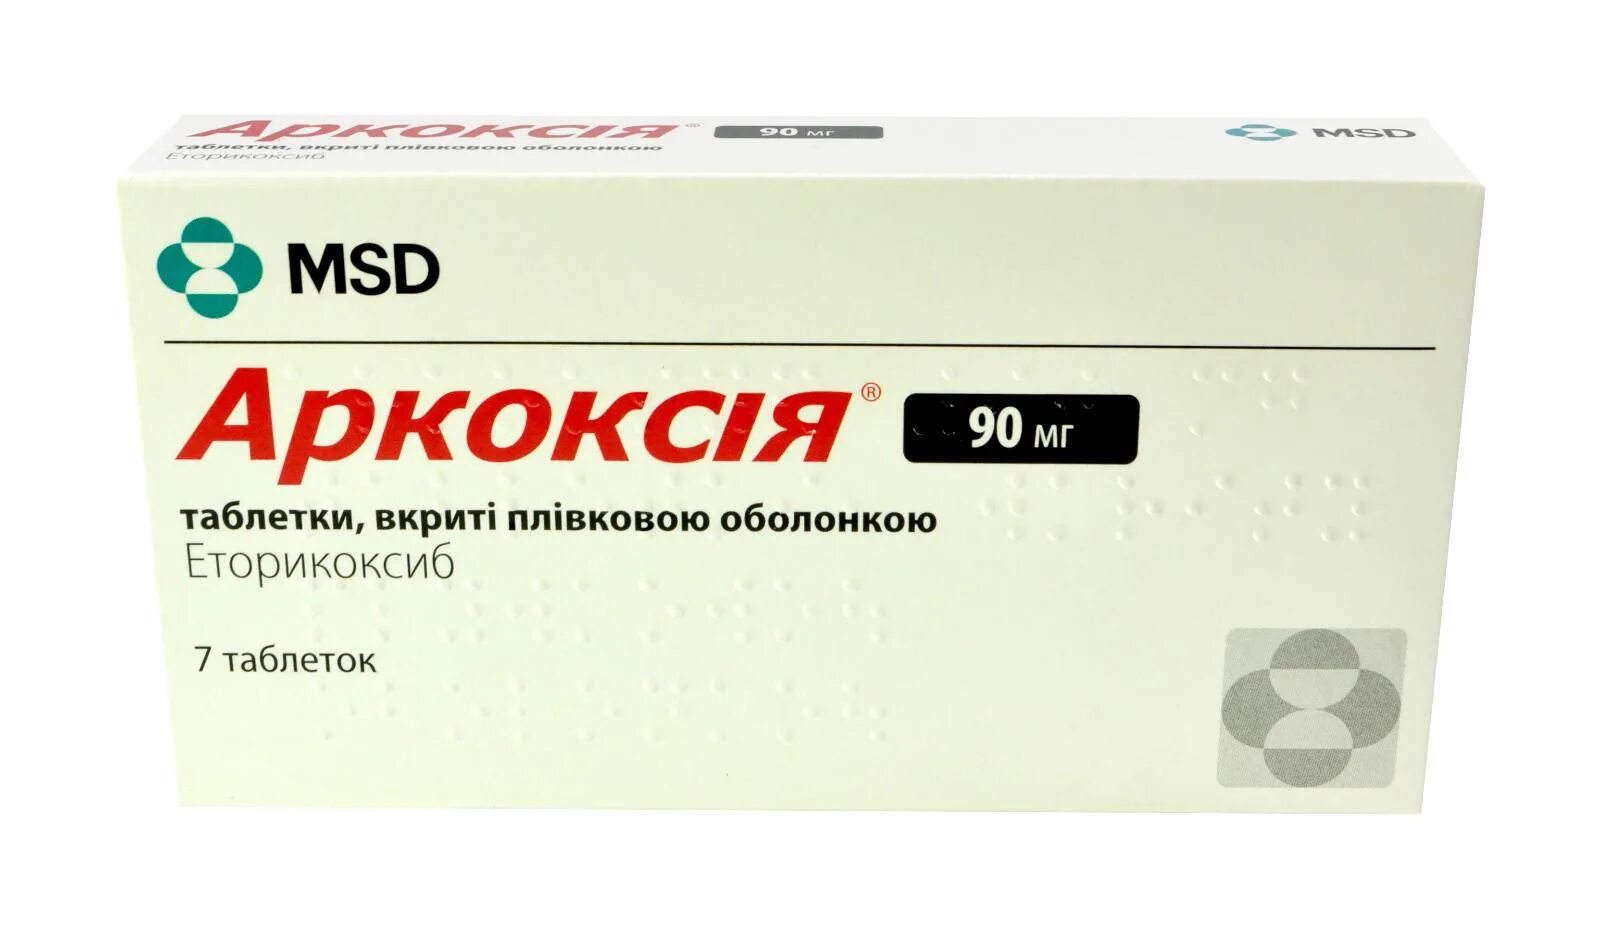 Аркоксиа действует через. Аркоксиа 90. Аркоксиа таблетки MSD. Аркоксиа 120 мг. Аркоксиа таблетки 90 мг 7 шт..